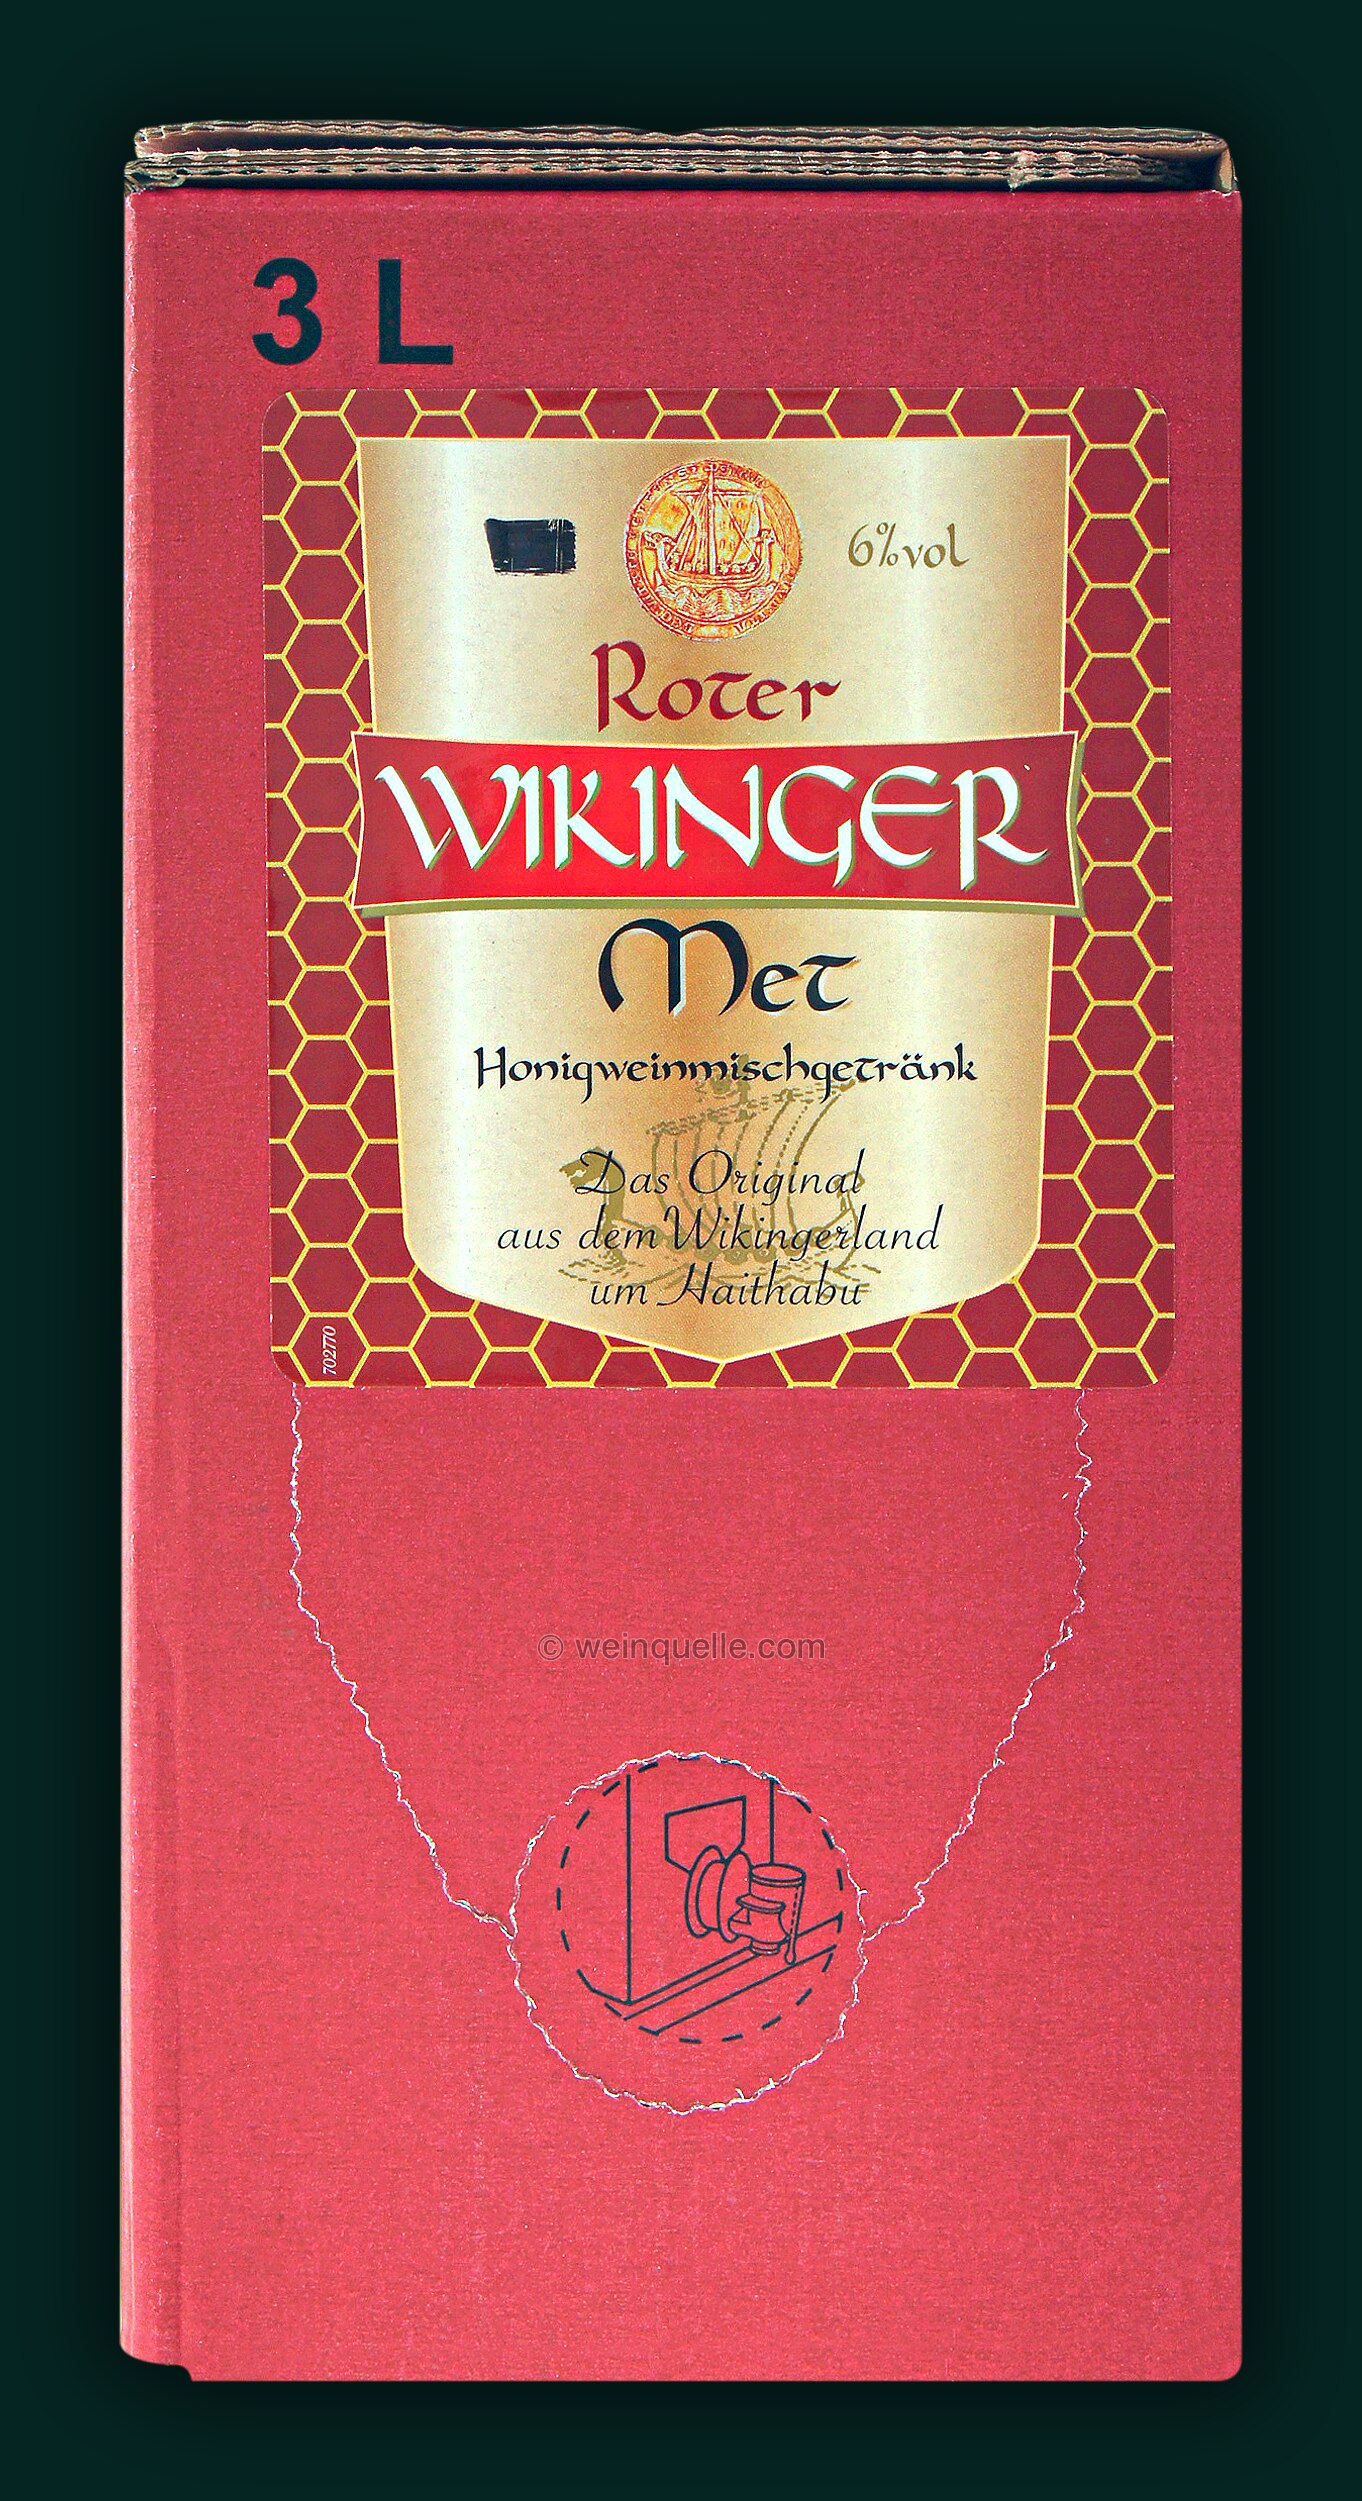 Met Roter Met Wikinger (Honigwein mit Kirschsaft) 3,0 Liter Bag in Box,  23,95 € - Weinquelle Lühmann | Rotweine